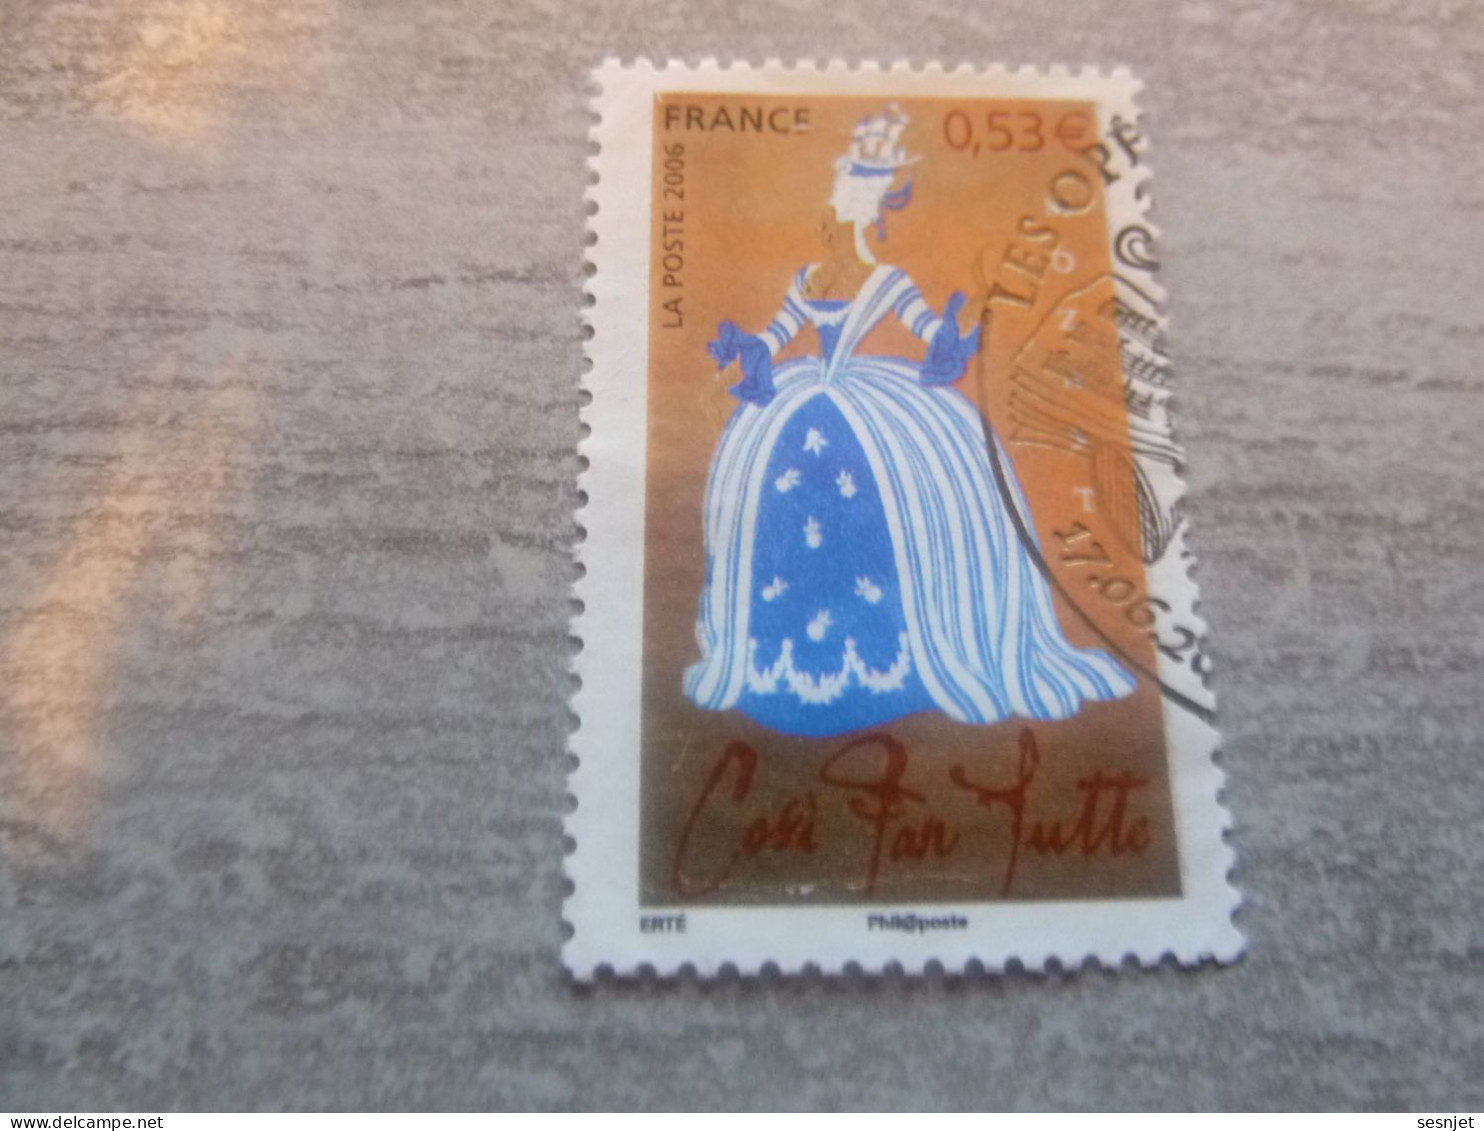 Les Opéras De Mozart - Cosi Fan Tutte - 0.53 € - Yt 3920 - Oblitéré - Année 2006 - - Used Stamps